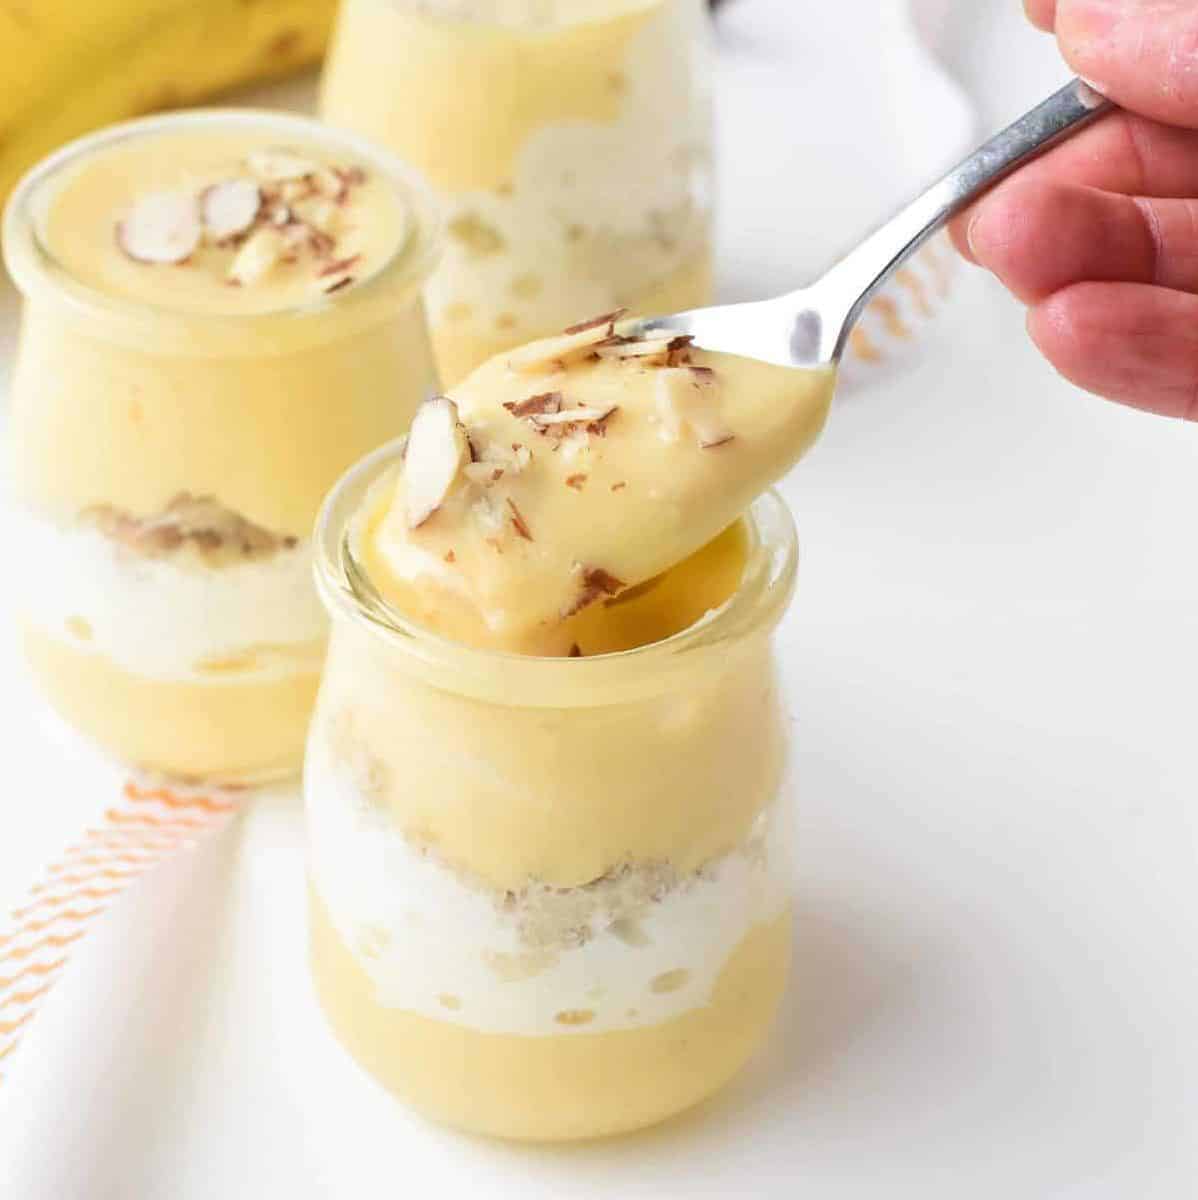  Creamy vanilla custard with a sweet banana twist